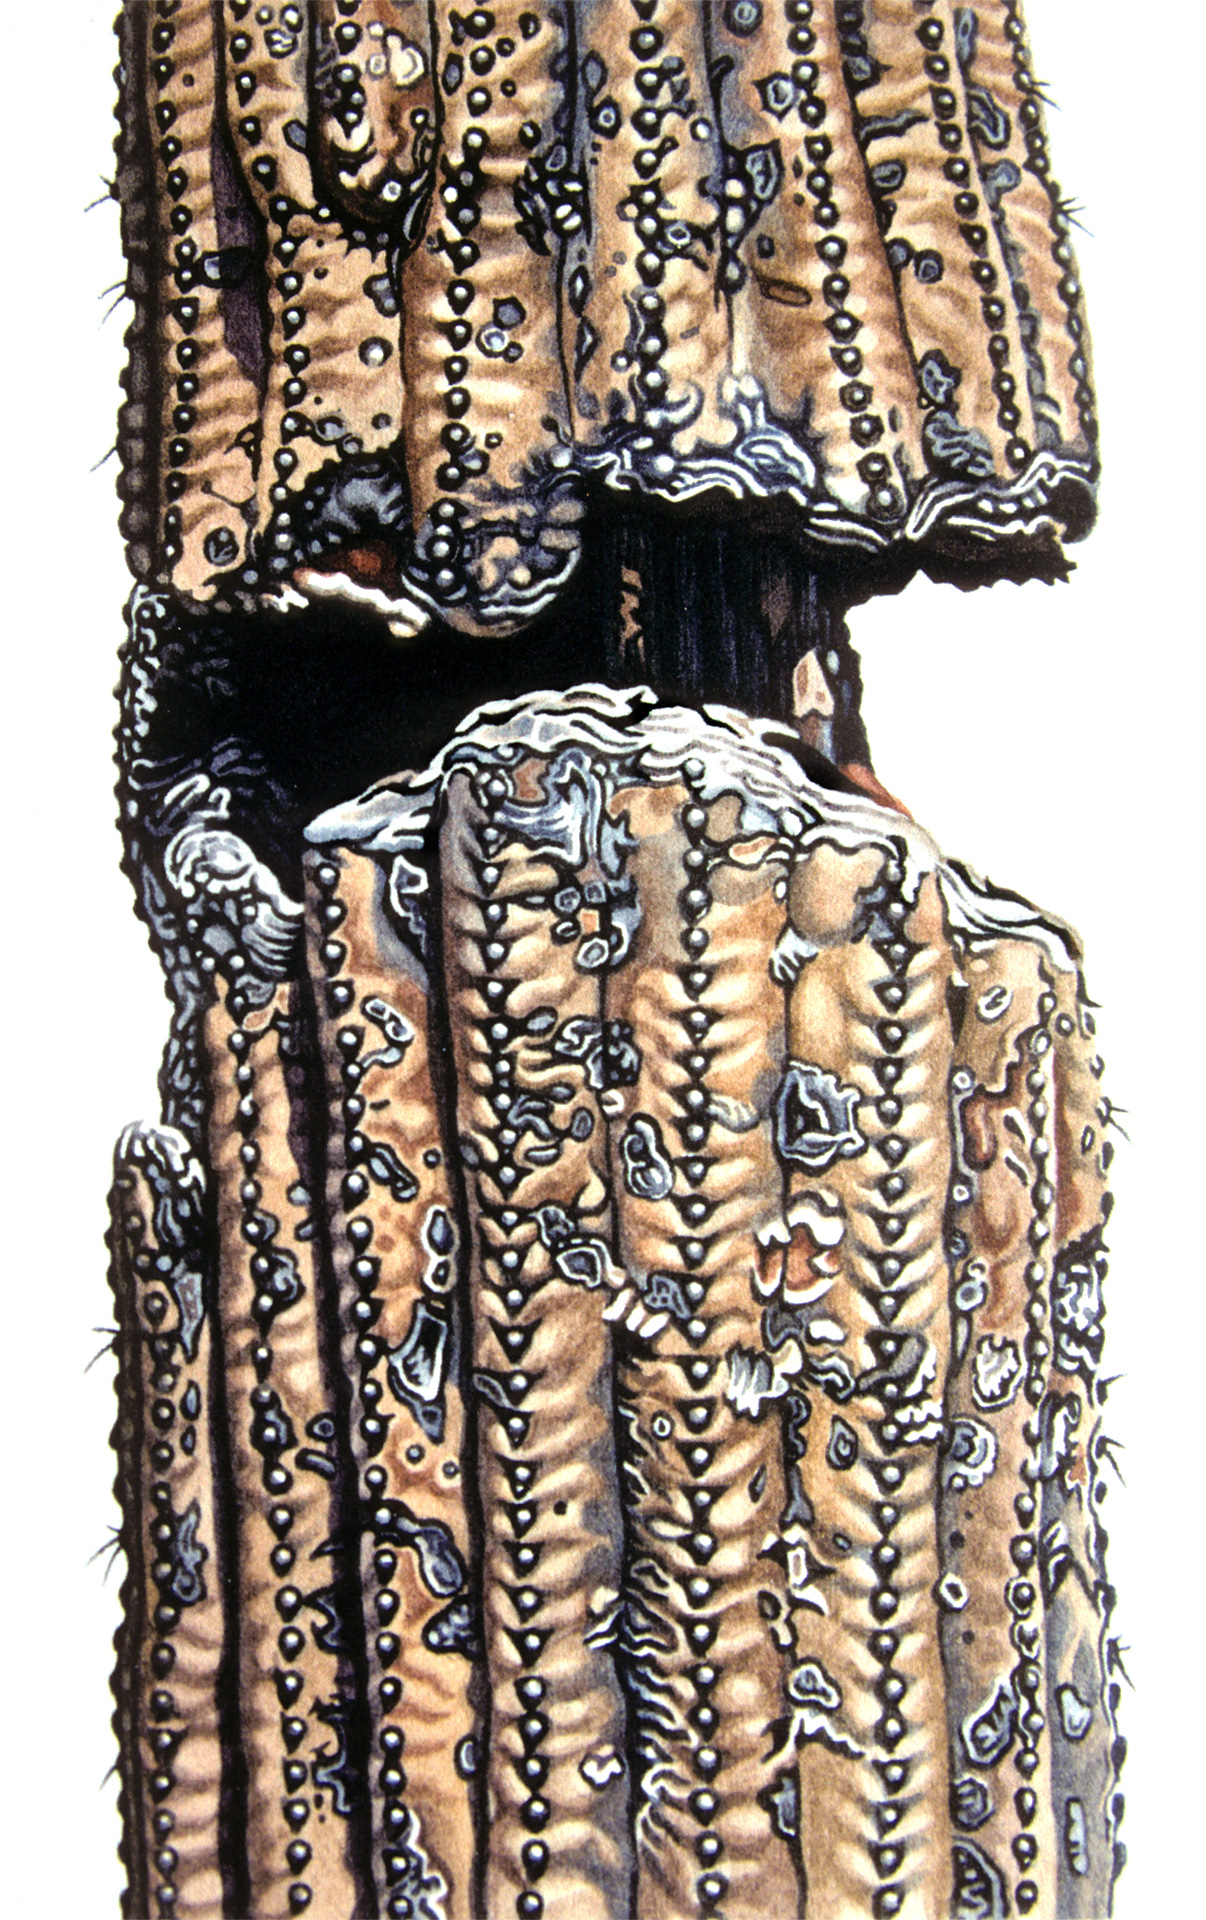 Saguaro-Stamm lll, 2008, Aquarell und Farbstift auf Papier, 28 x 22 cm